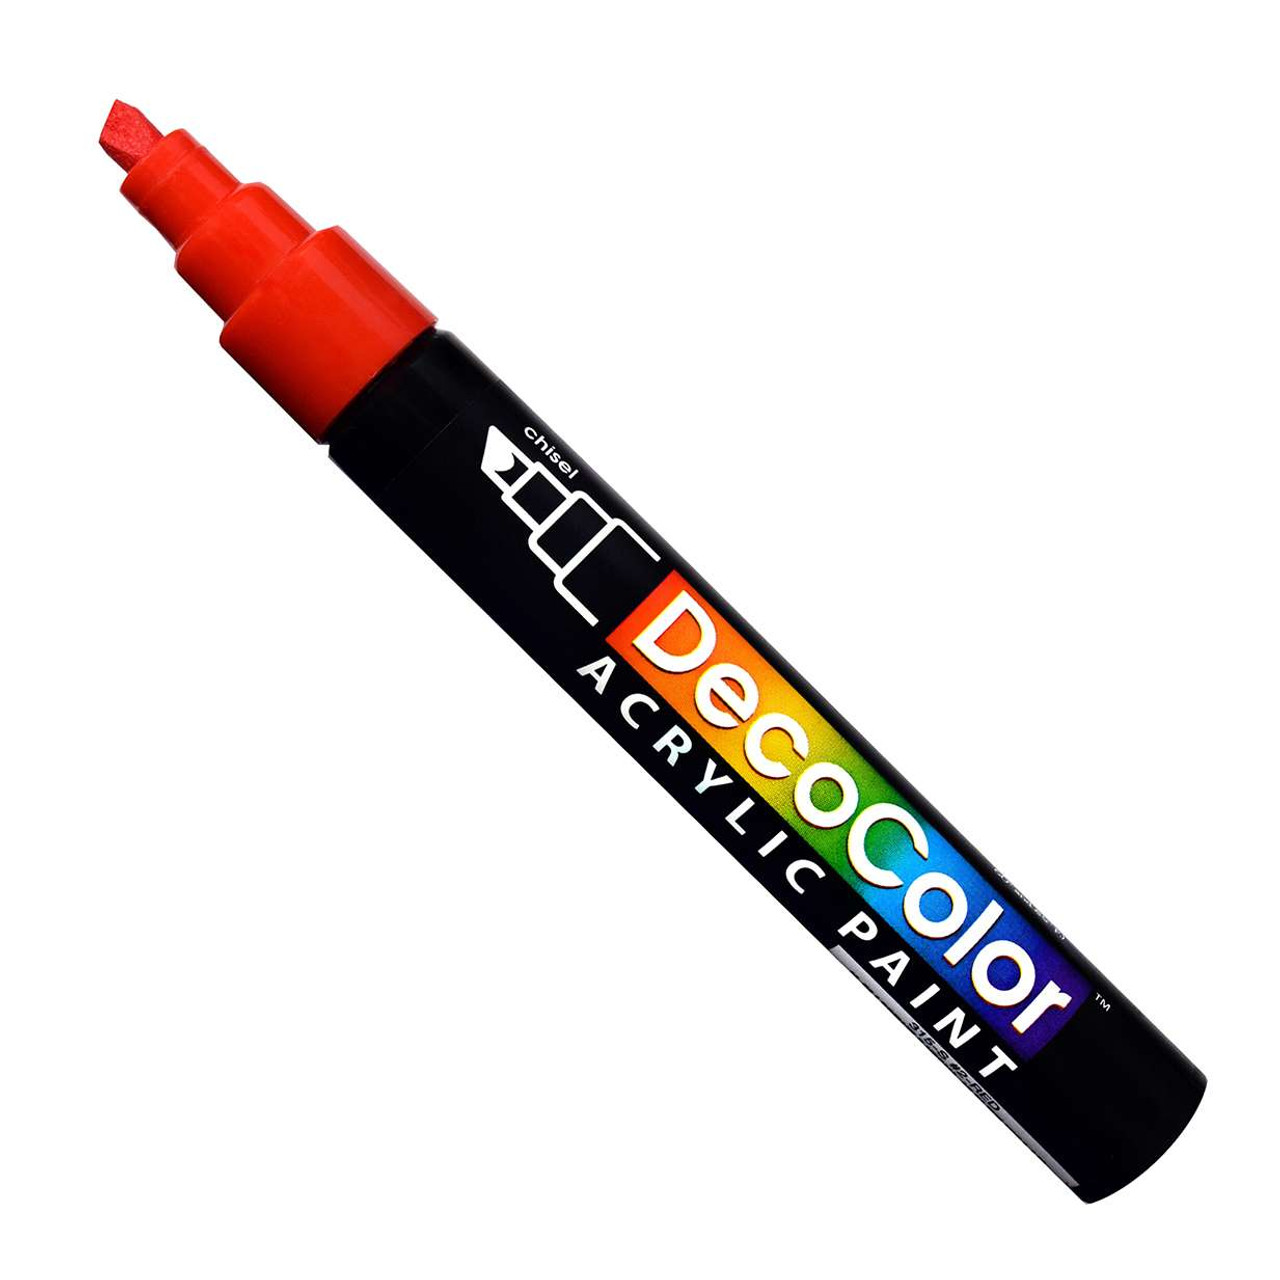 DecoColor Premium Paint Marker - Silver Fine Tip